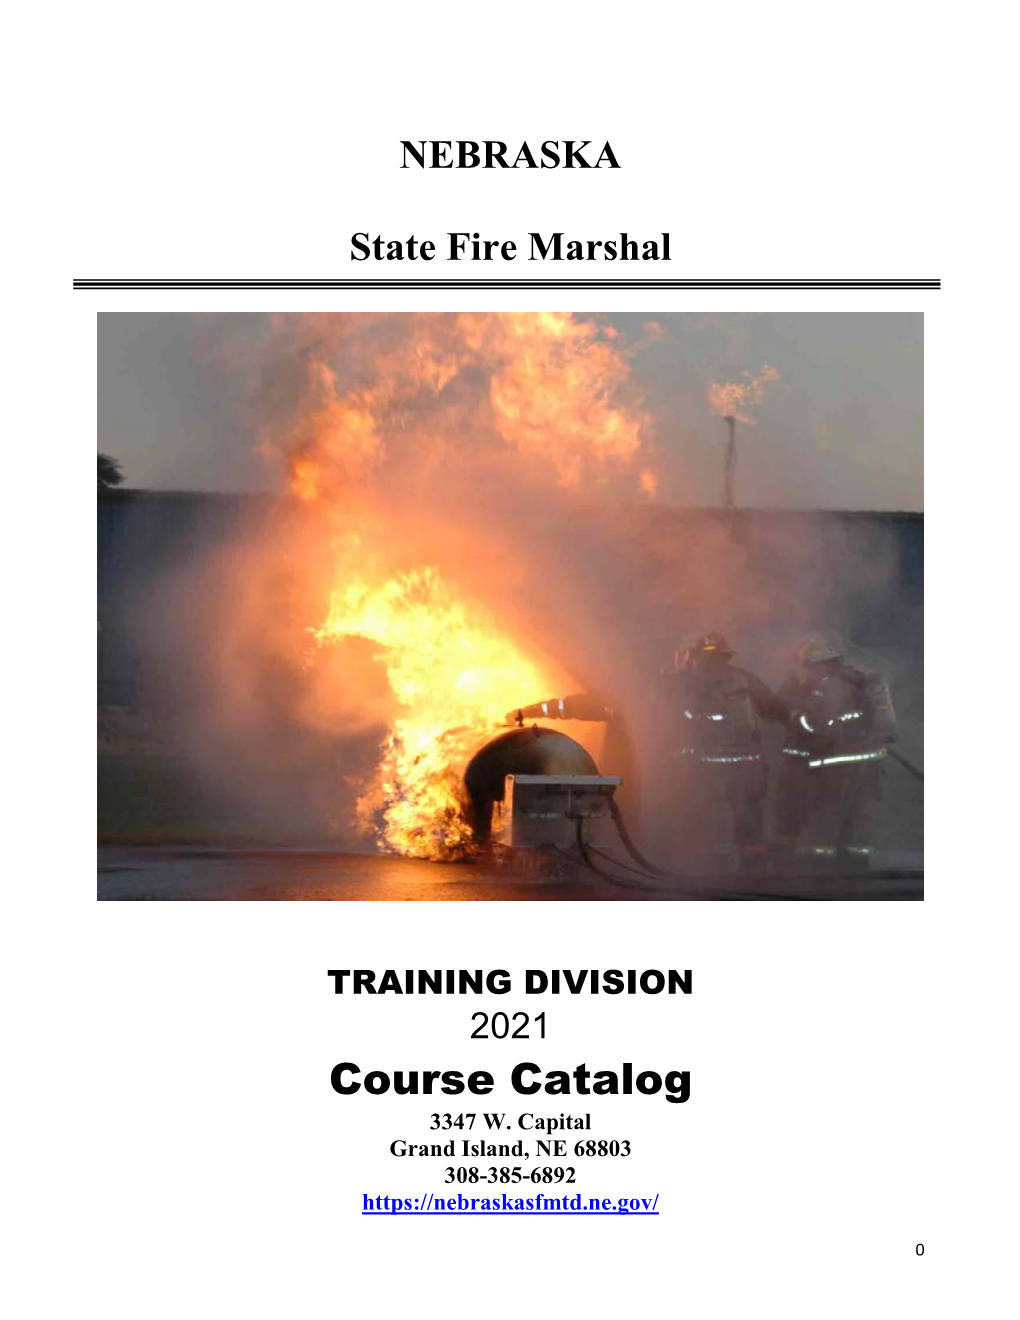 The Complete Course Description Catalog